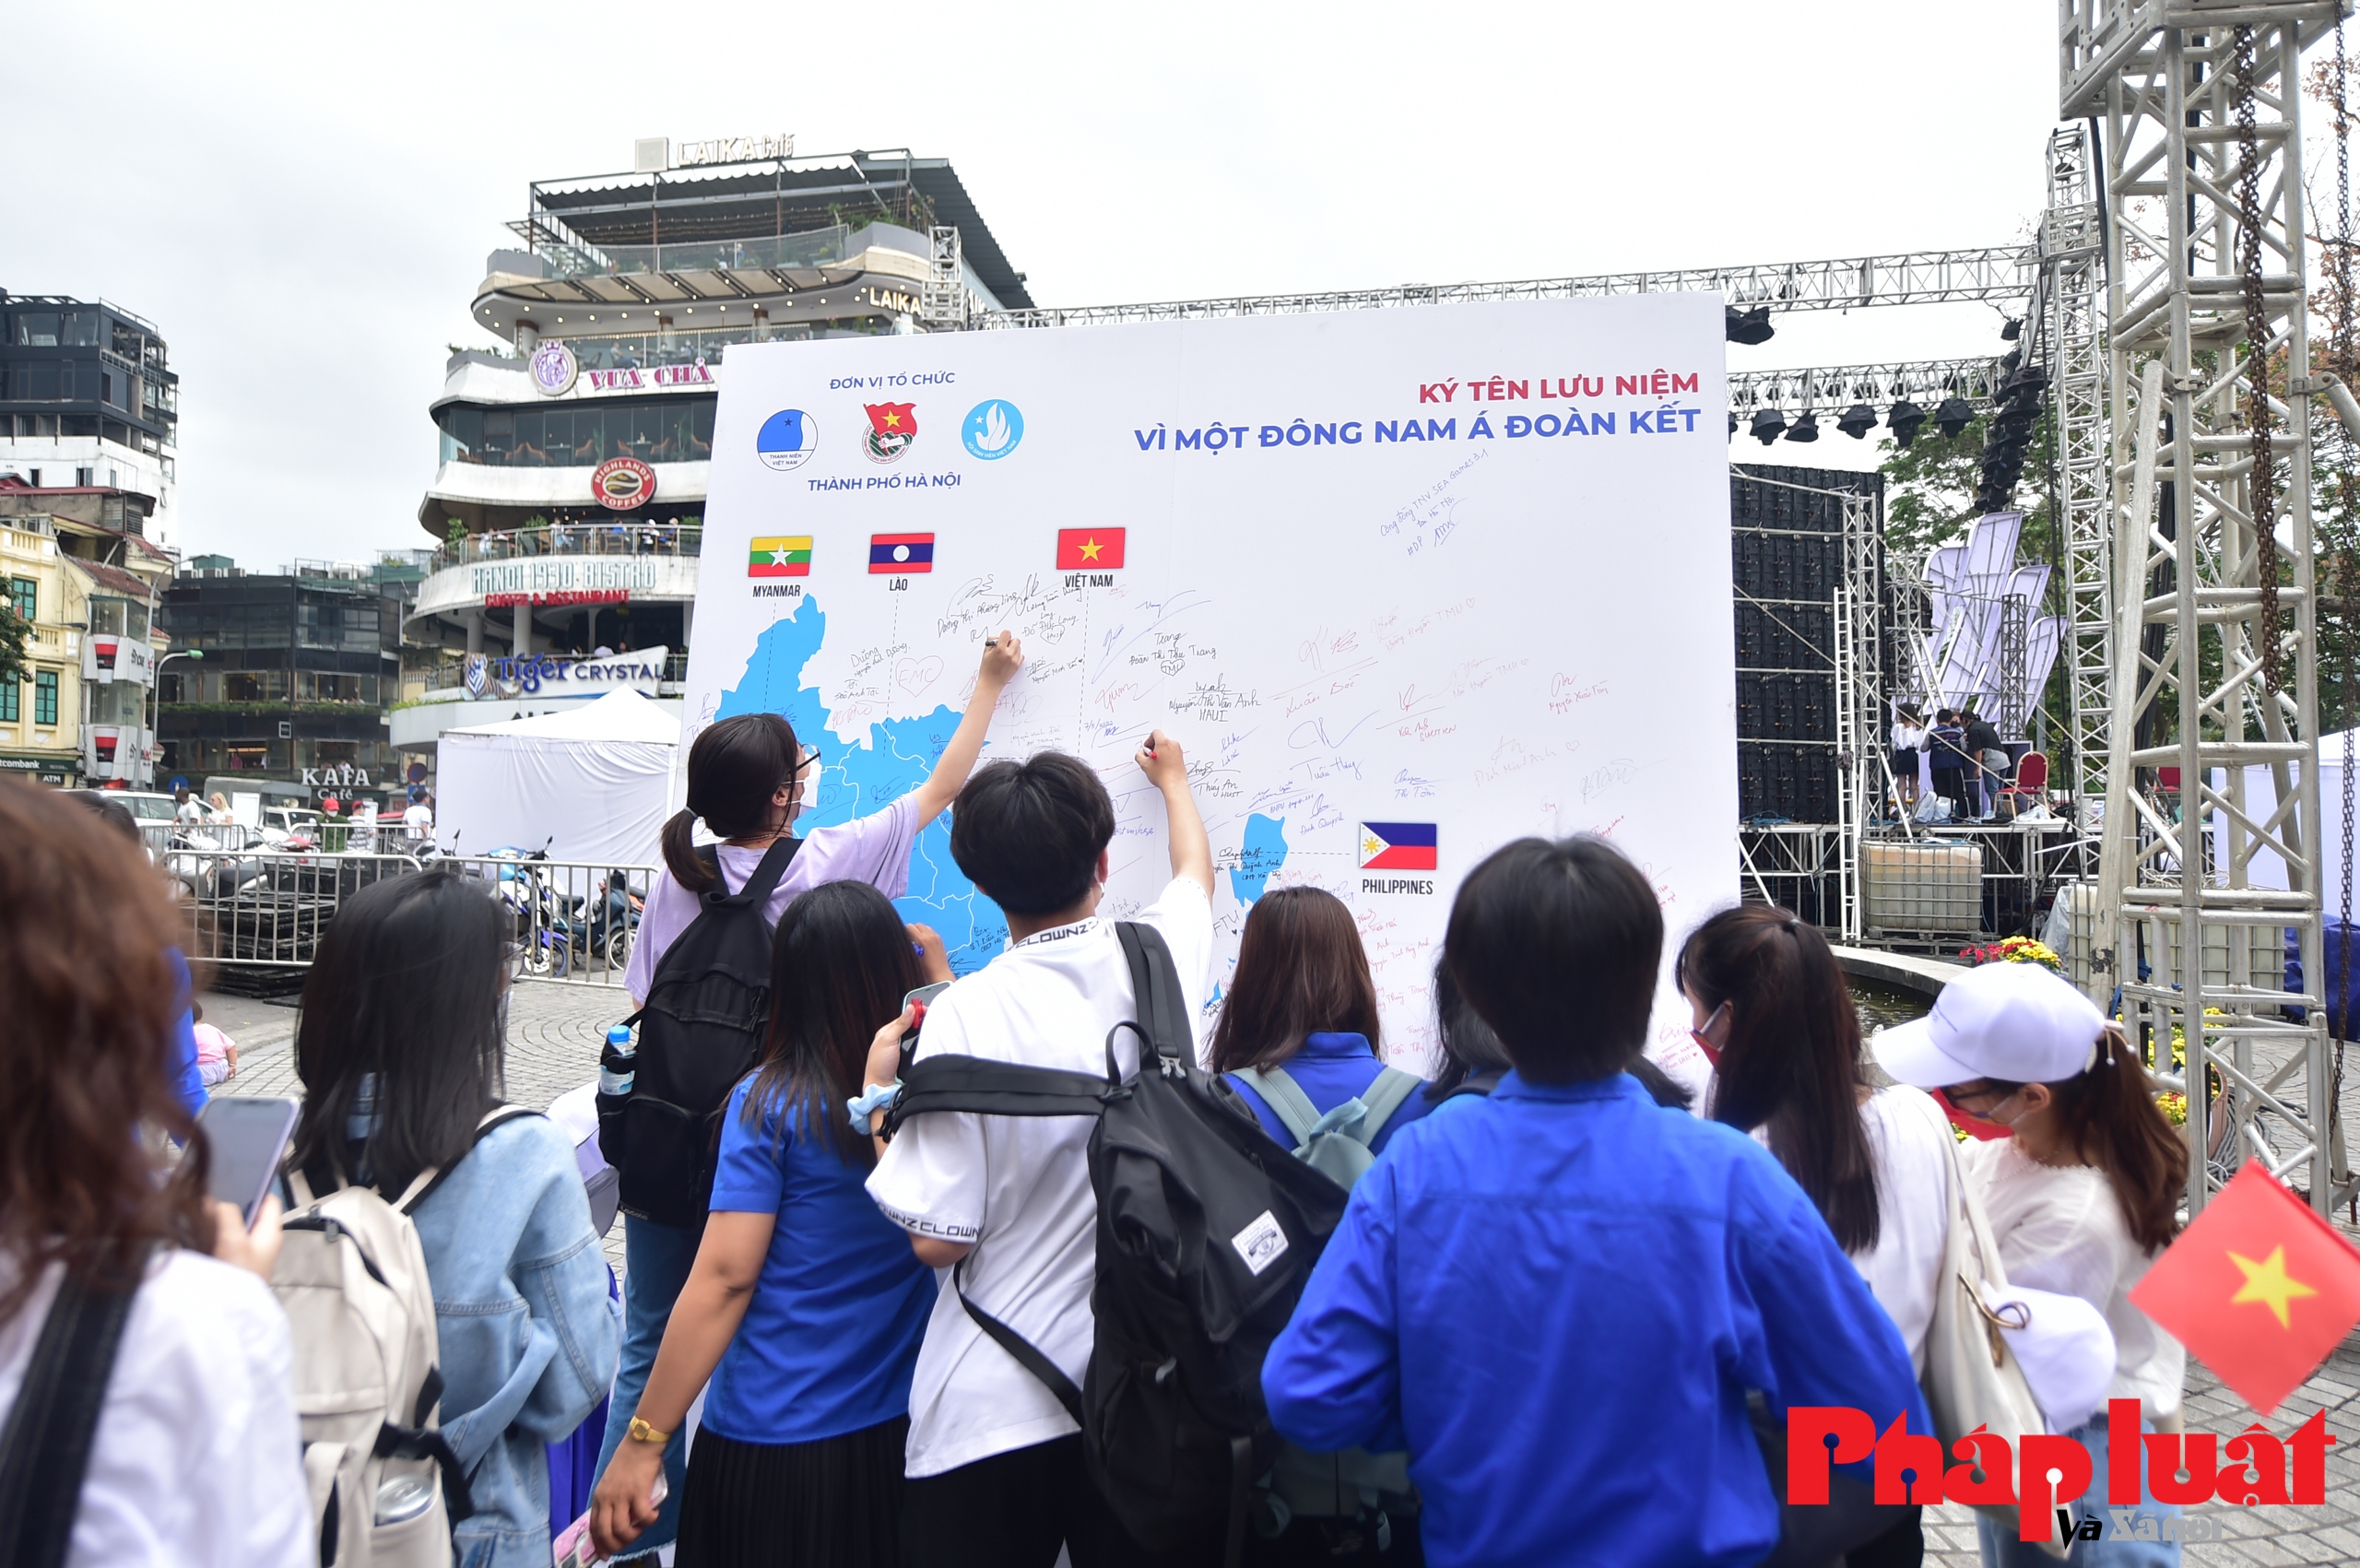 Sức trẻ thanh niên Đông Nam Á hướng tới SEA Games 31